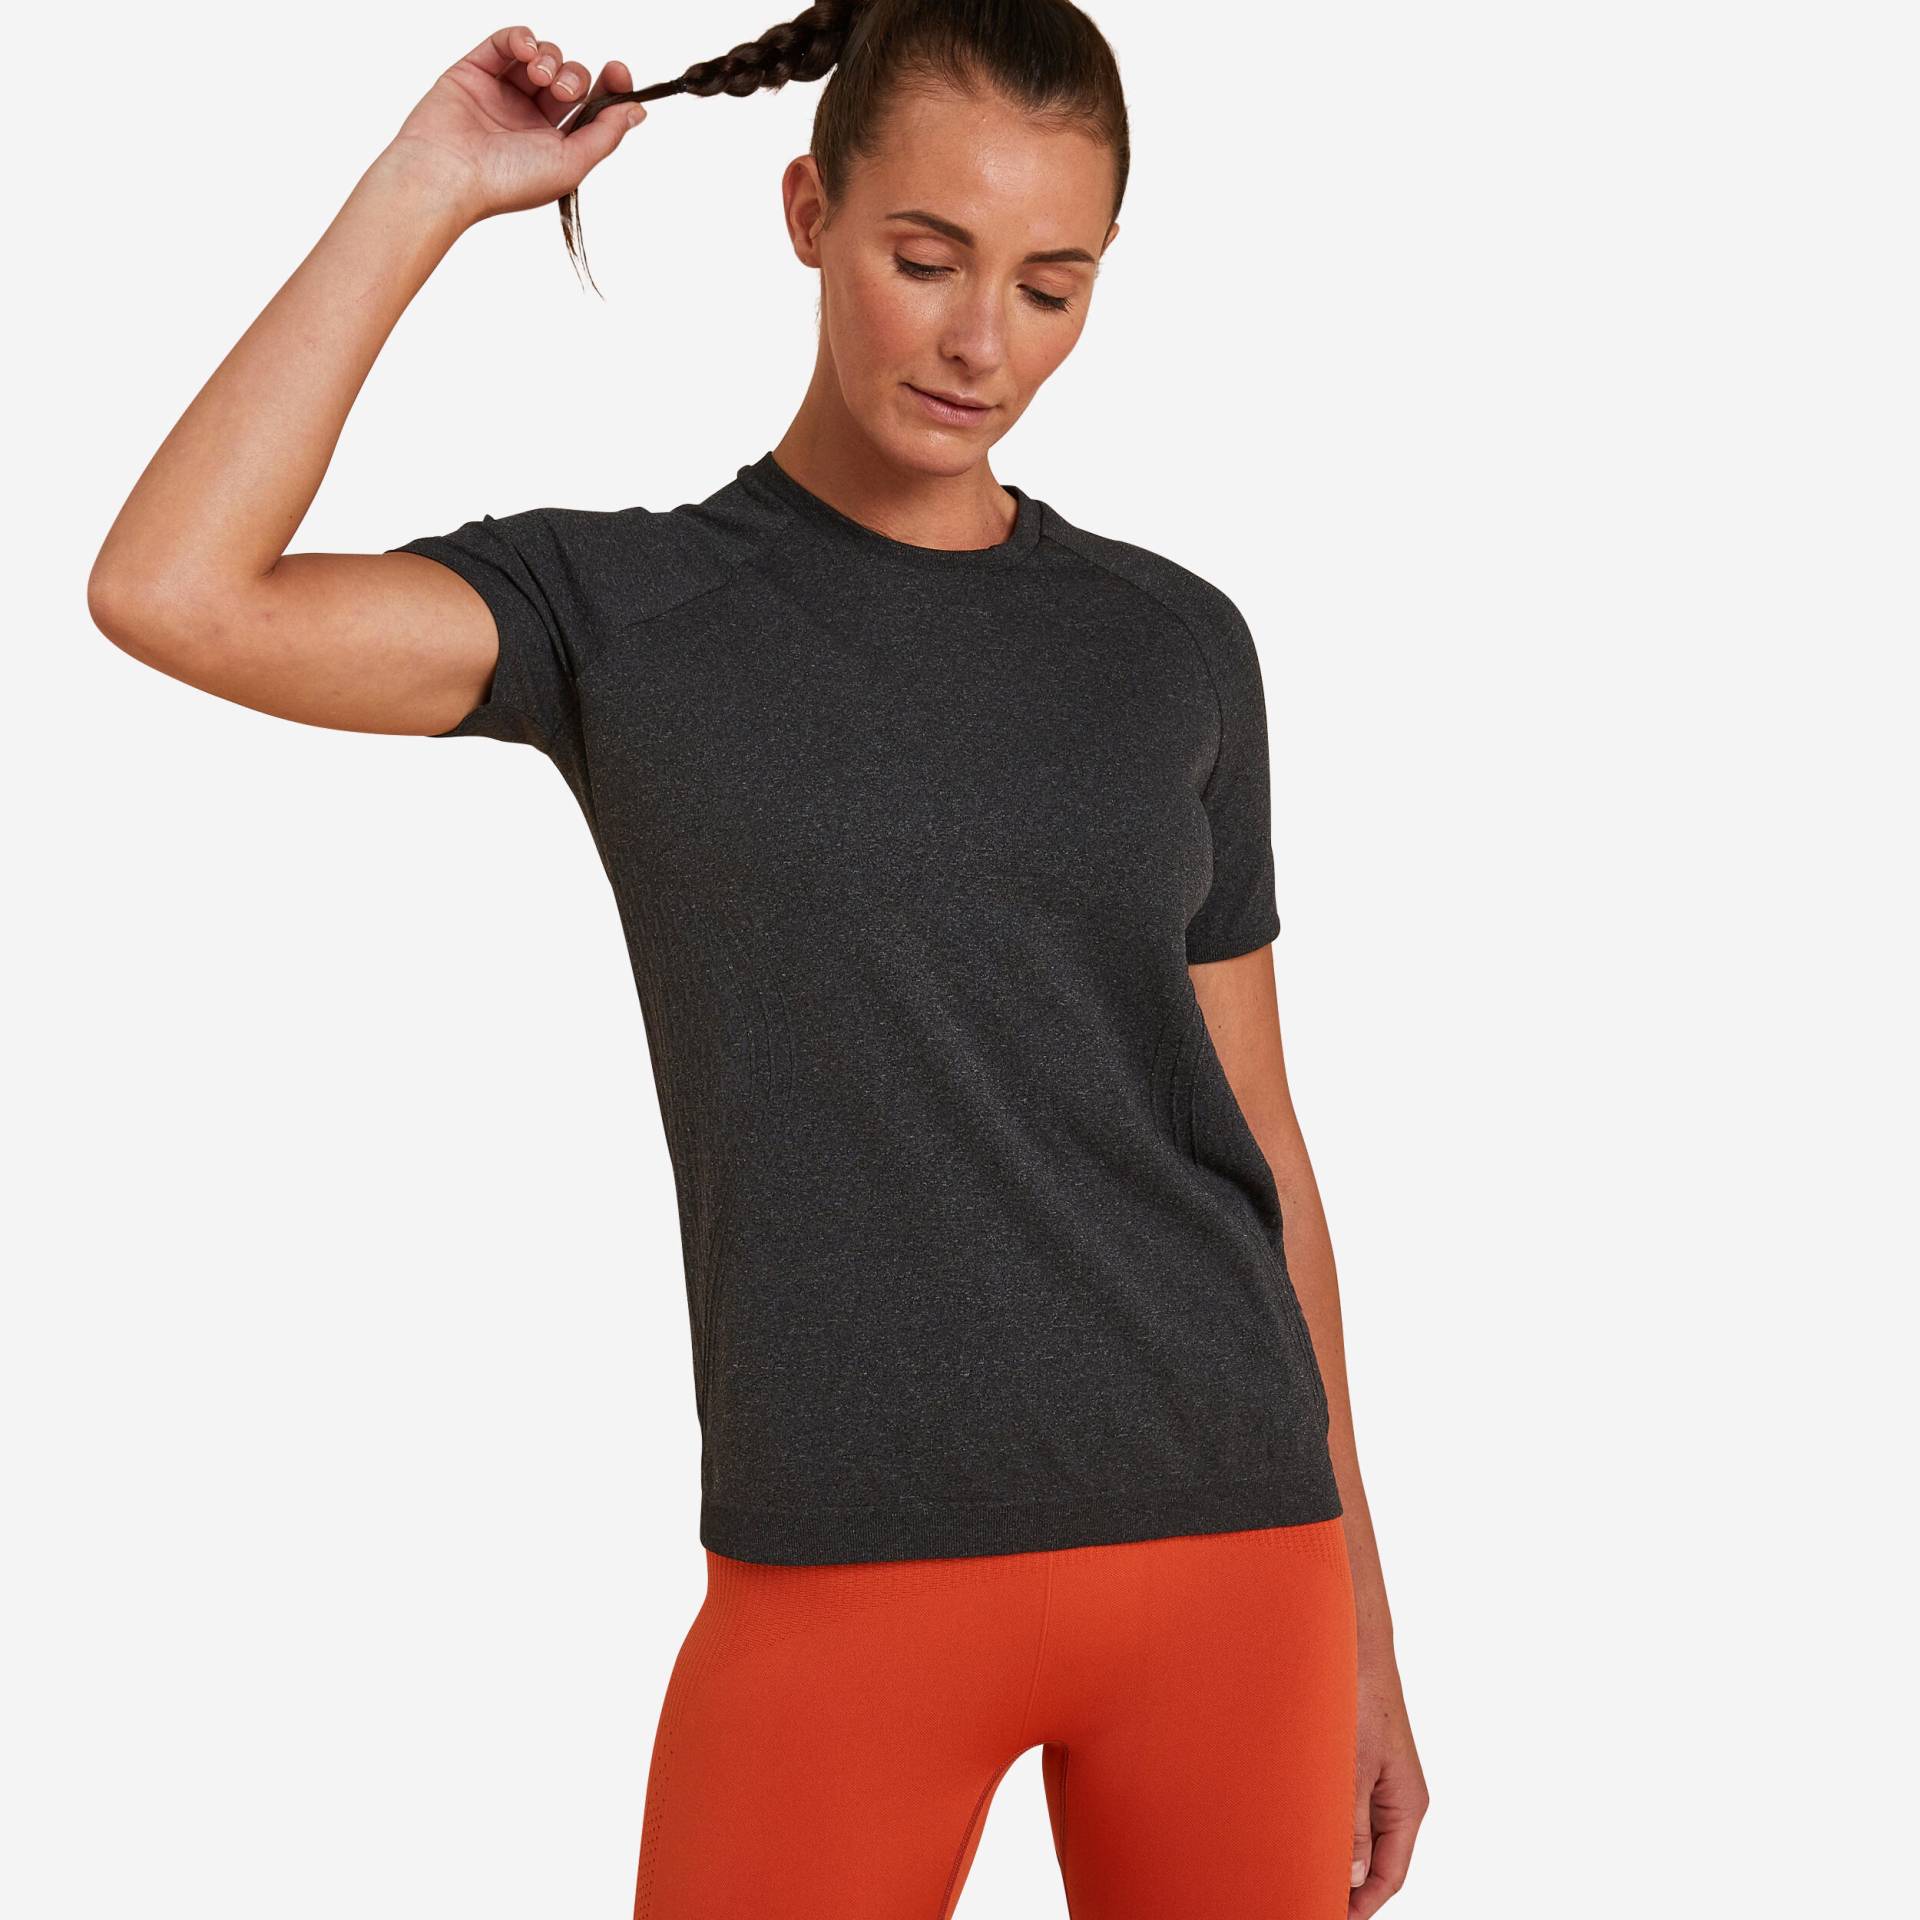 T-Shirt dynamisches Yoga nahtlos Damen - schwarzmeliert von KIMJALY